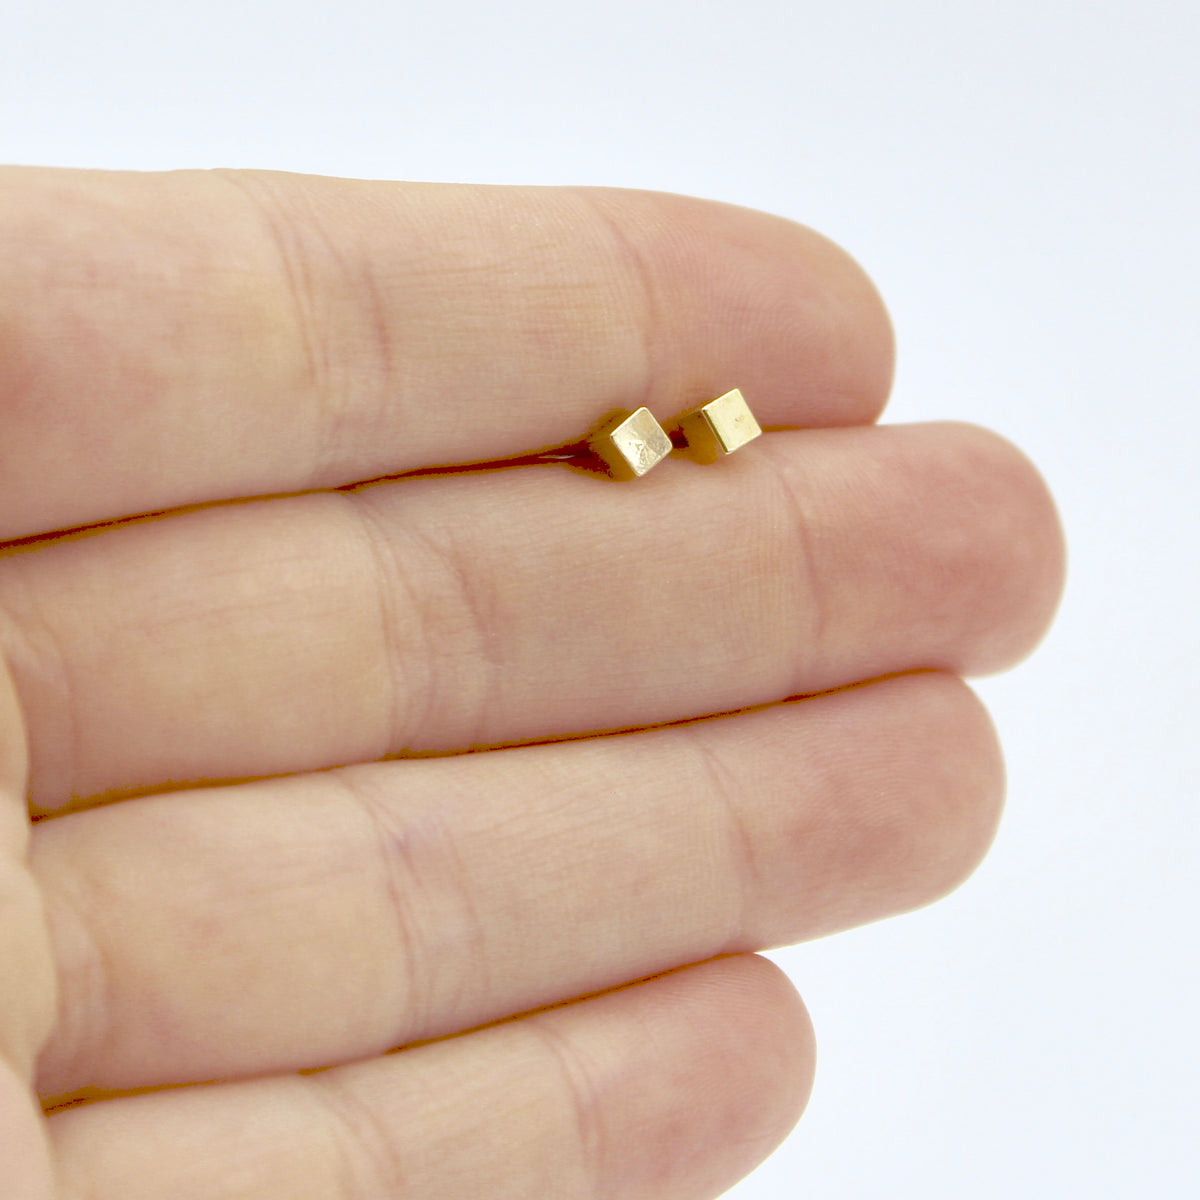 Mini Cube Earrings - Brass